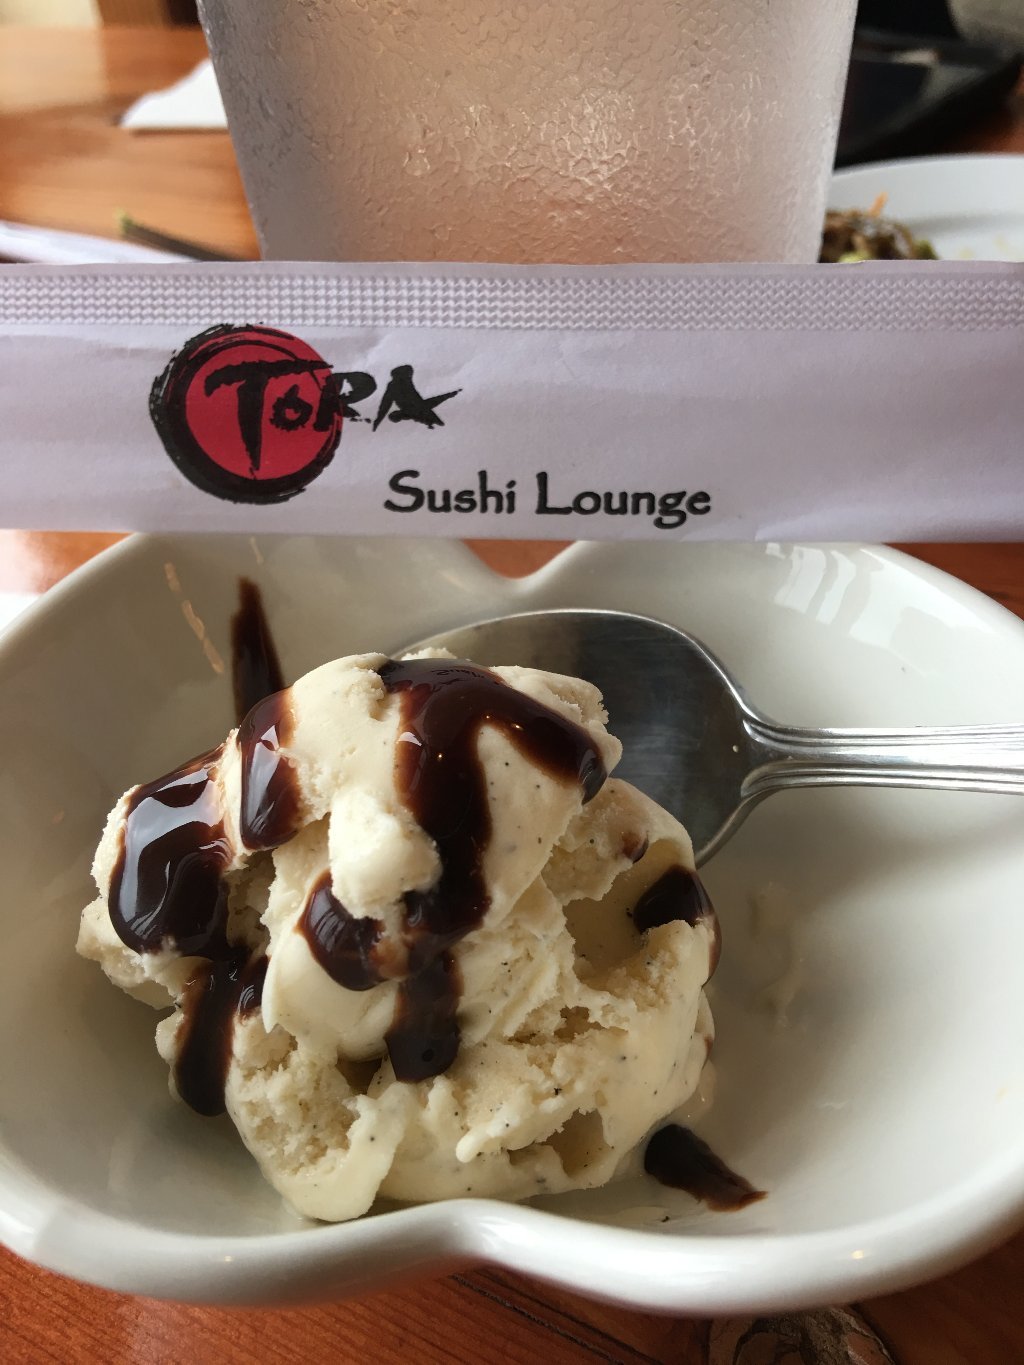 Tora Sushi Lounge